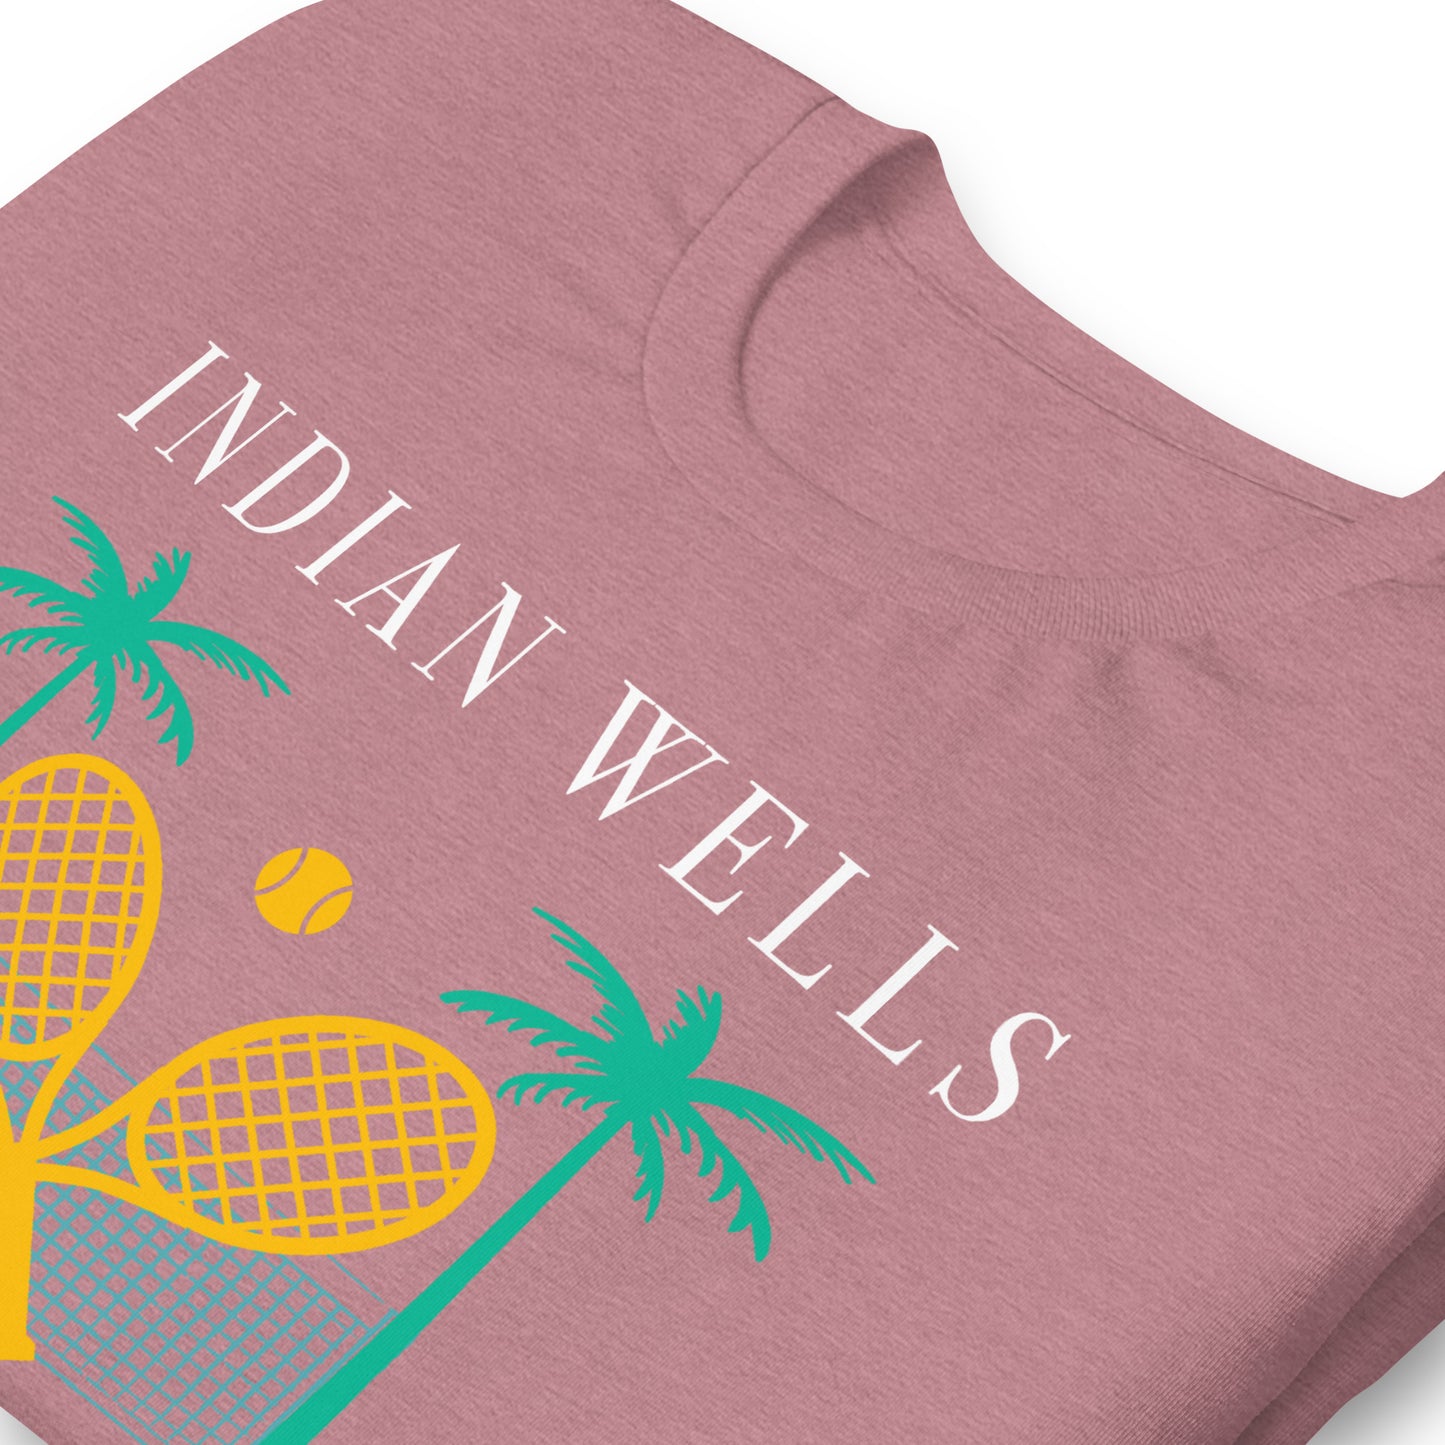 Indian Wells Tennis Garden unisex shirt